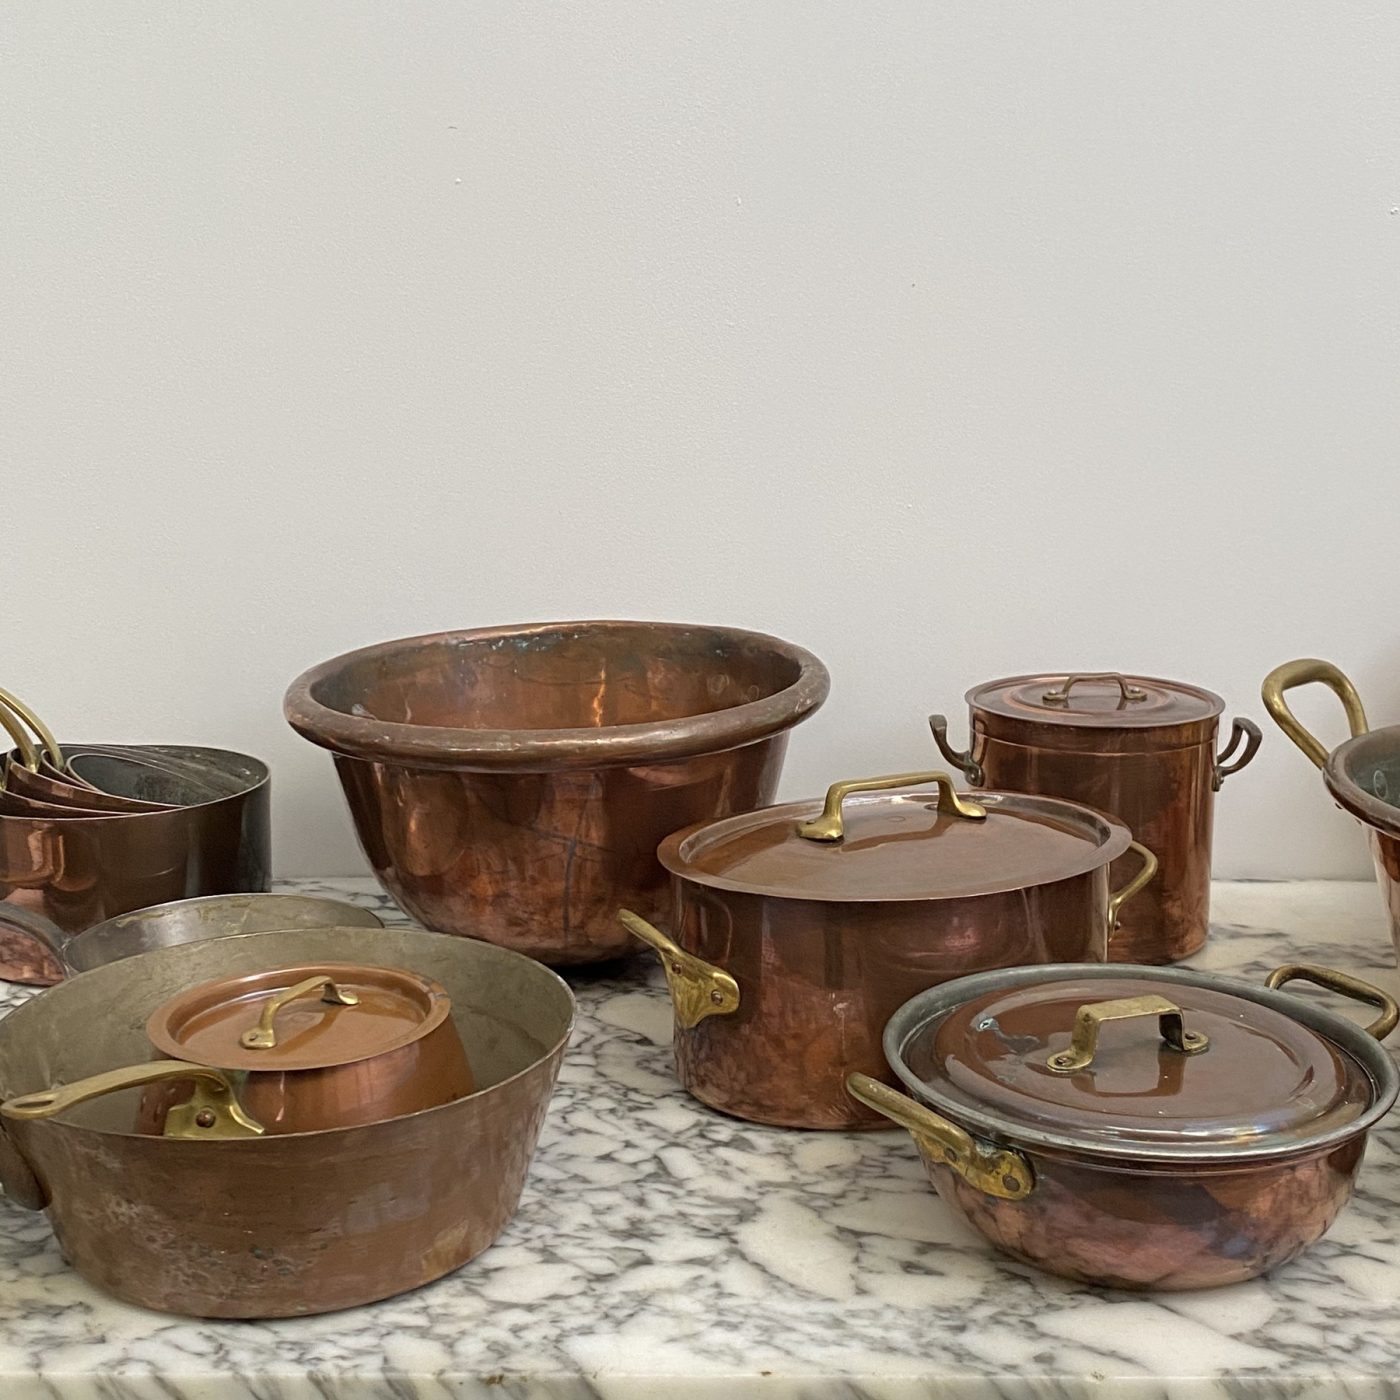 objet-vagabond-copper-collection0000